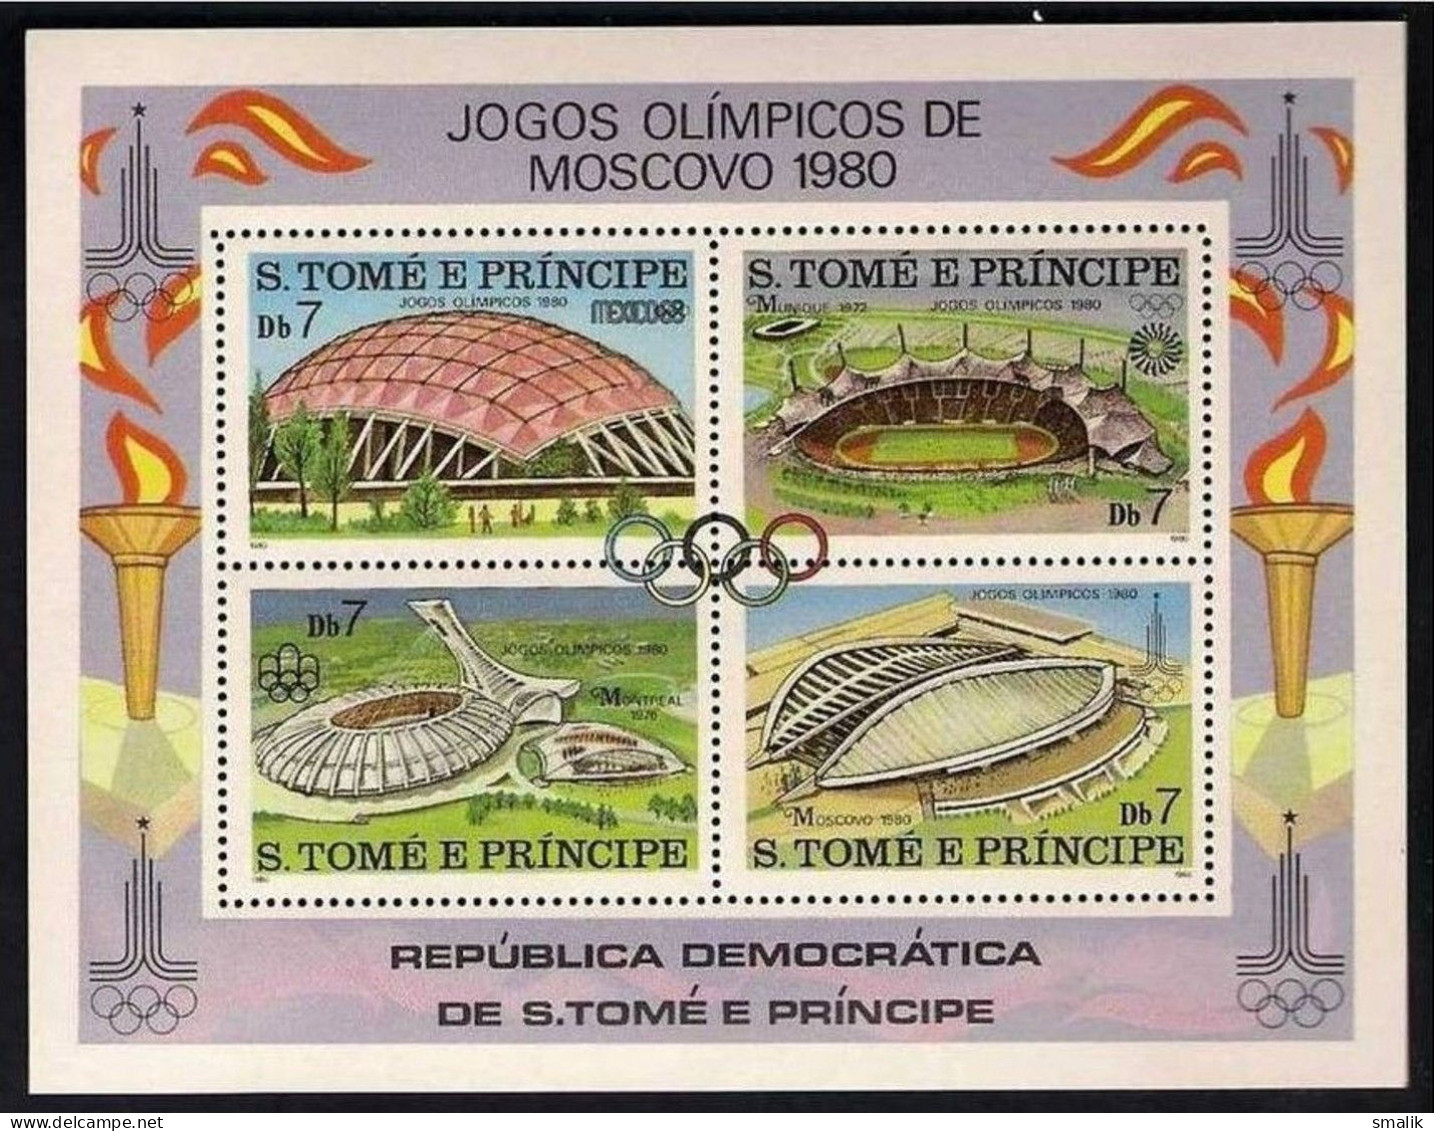 S. TOME E PRINCIPE SAO 1980 - Moscow Olympic Games, Stadium, Miniature Sheet MNH - Sao Tomé Y Príncipe